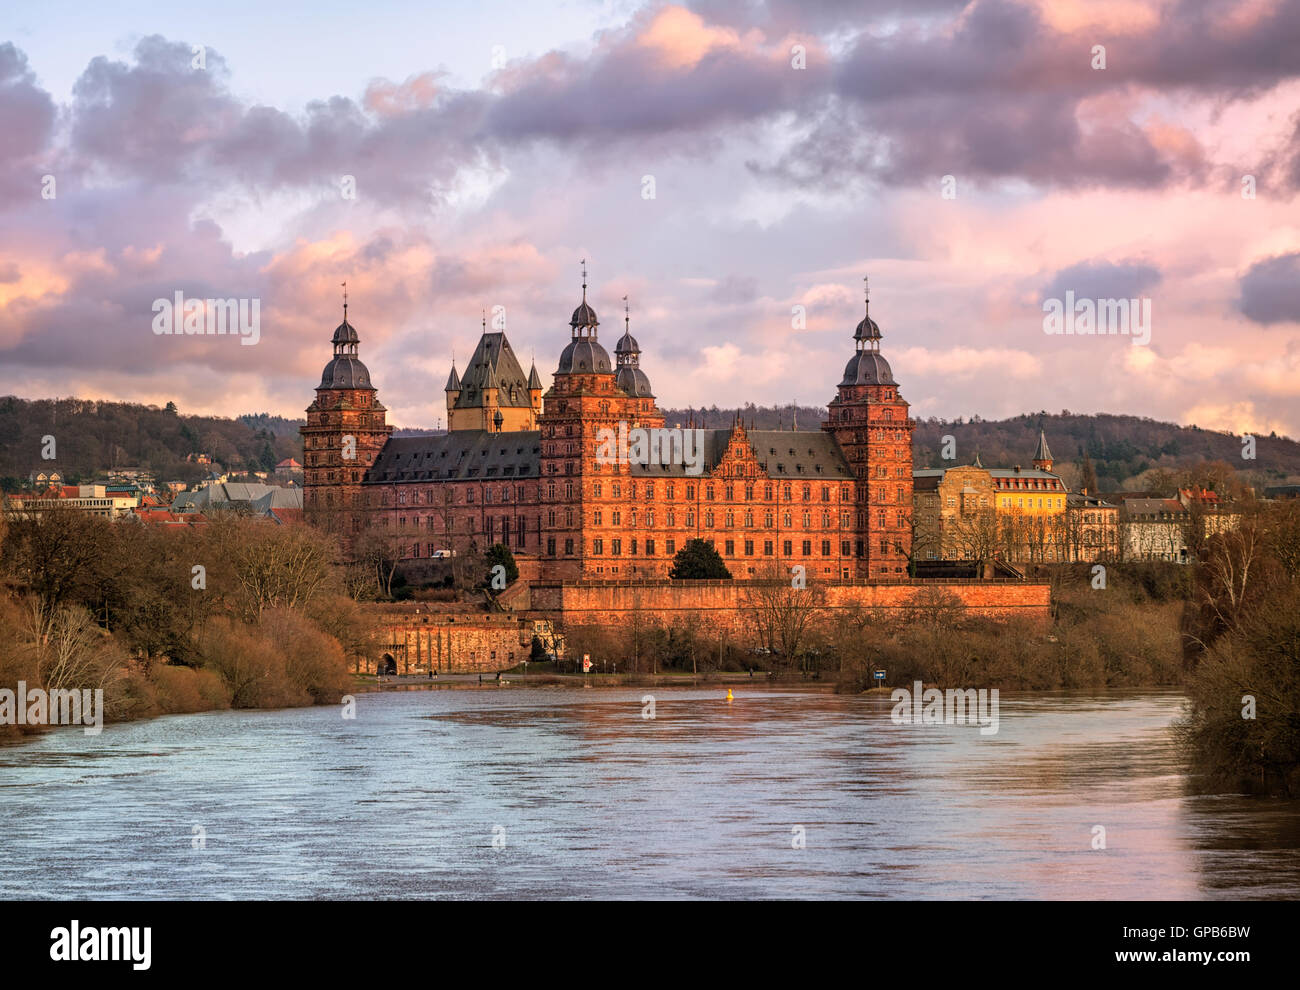 Château Renaissance de Johannisburg, principal fleuve d'Aschaffenburg, Allemagne Banque D'Images